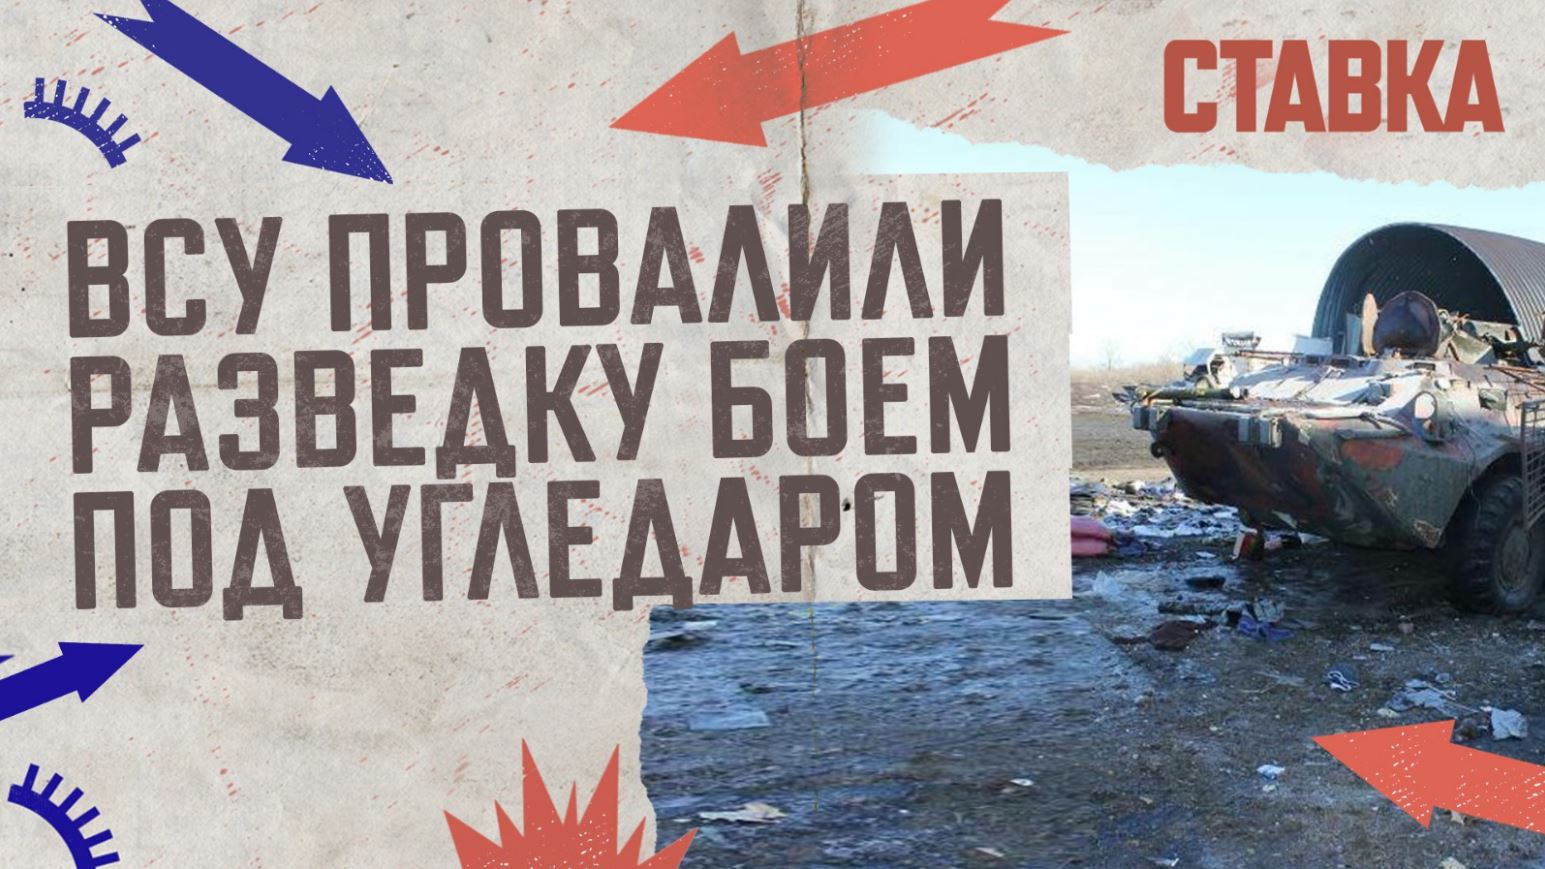 СВО 19.04 | ВСУ провалили разведку боем под Угледаром | В Артёмовске освобождены 3 квартала | СТАВКА